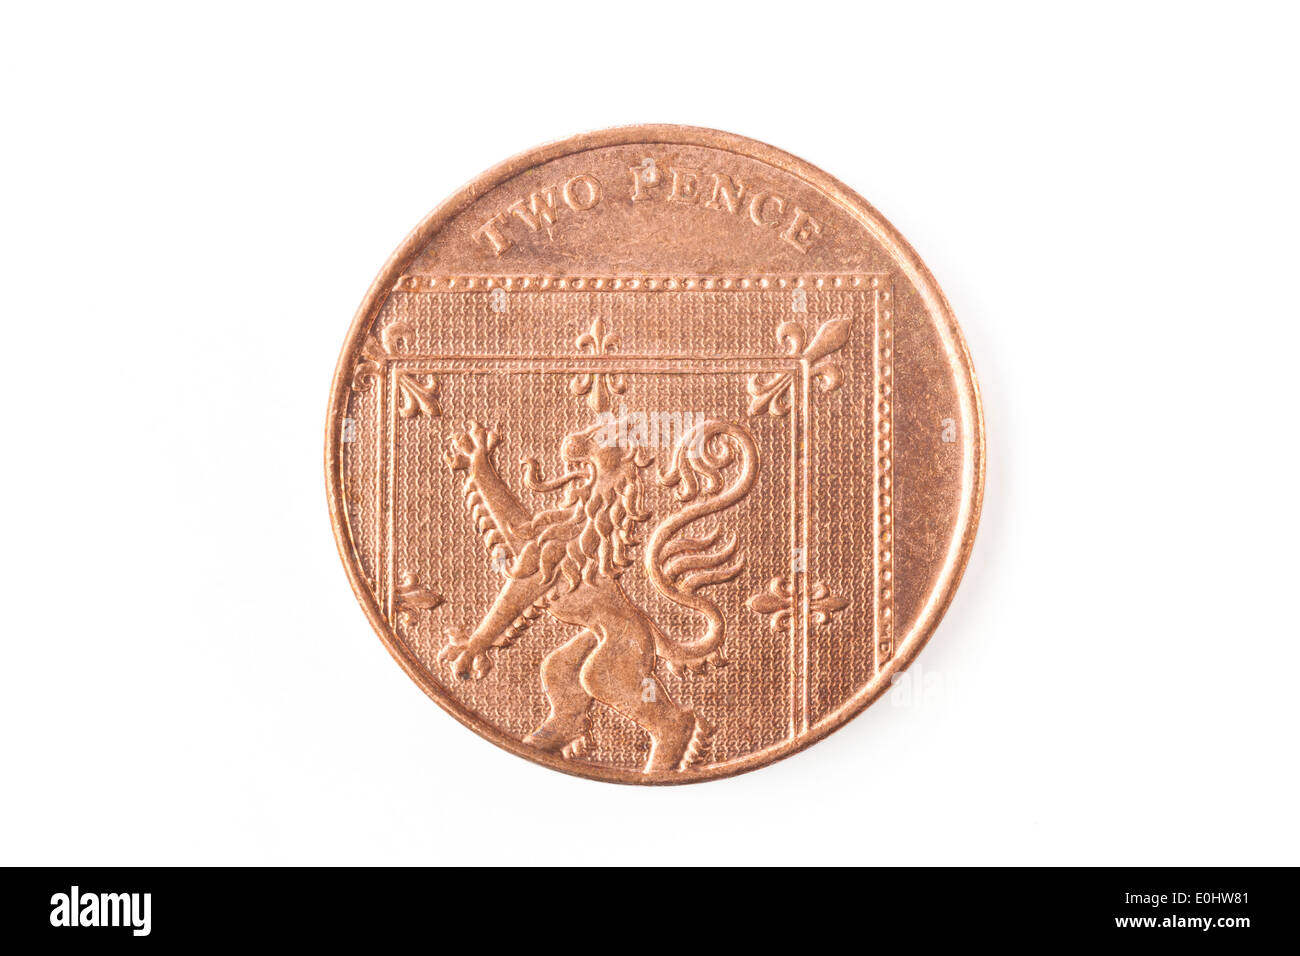 Moneda de 2 peniques esterlina Foto de stock